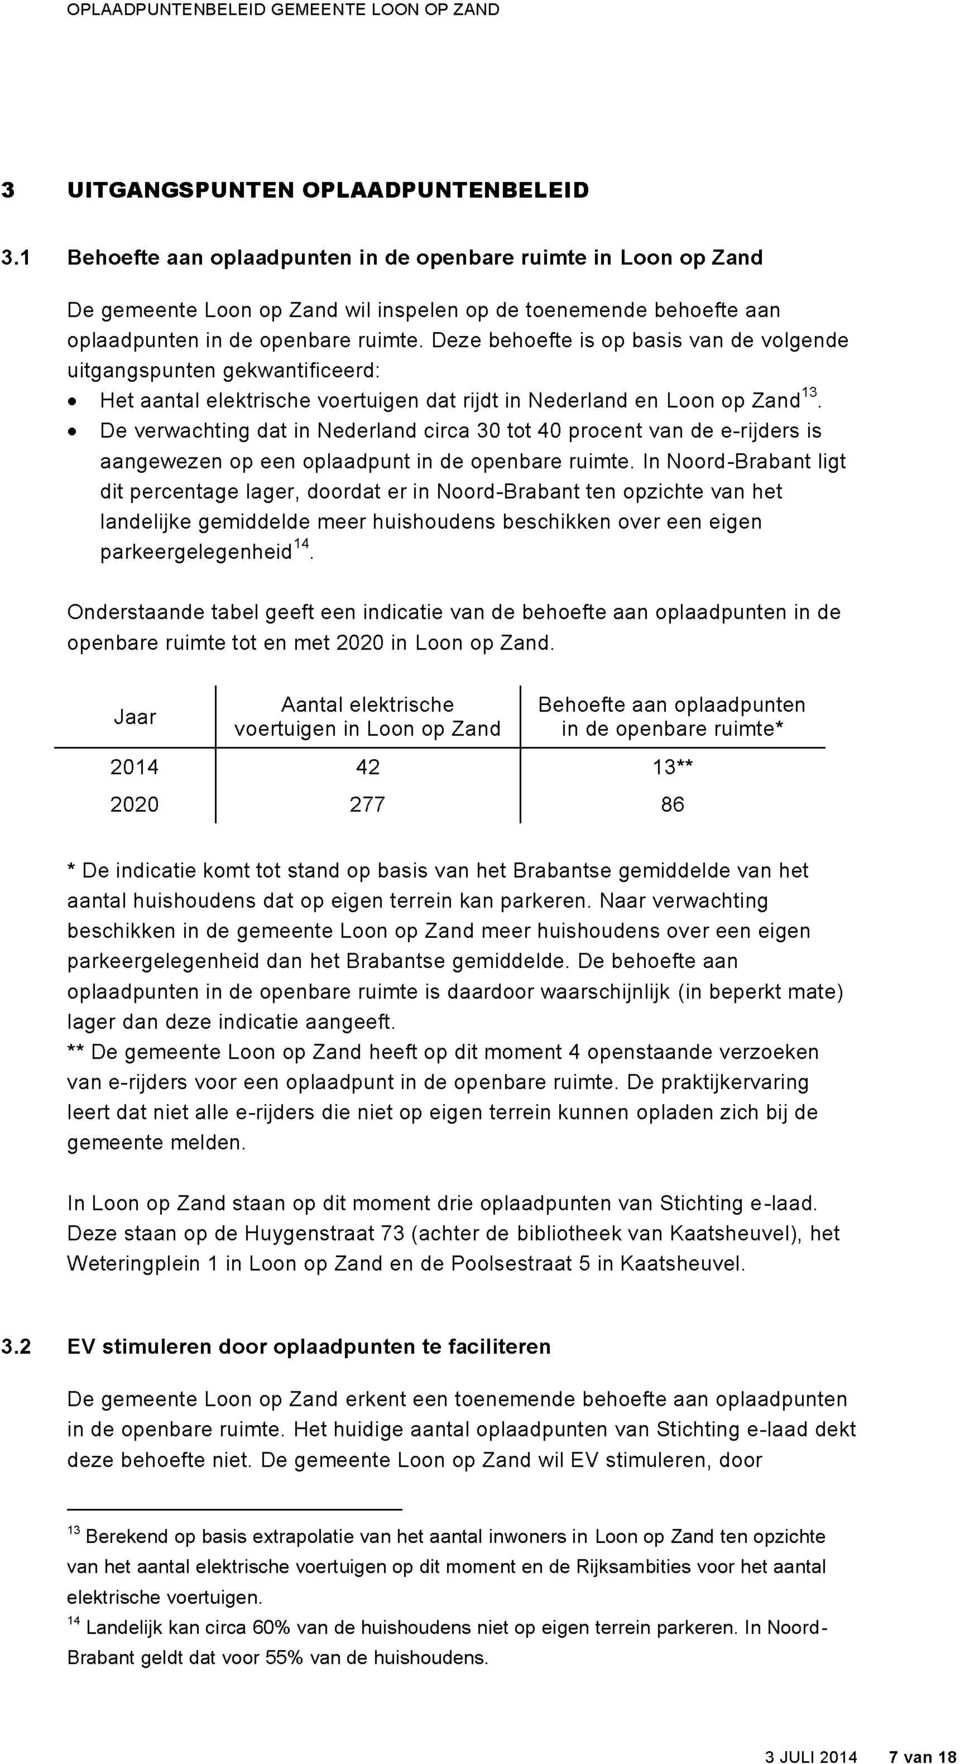 Deze behoefte is op basis van de volgende uitgangspunten gekwantificeerd: «Het aantal elektrische voertuigen dat rijdt in Nederland en Loon op Zand 13.